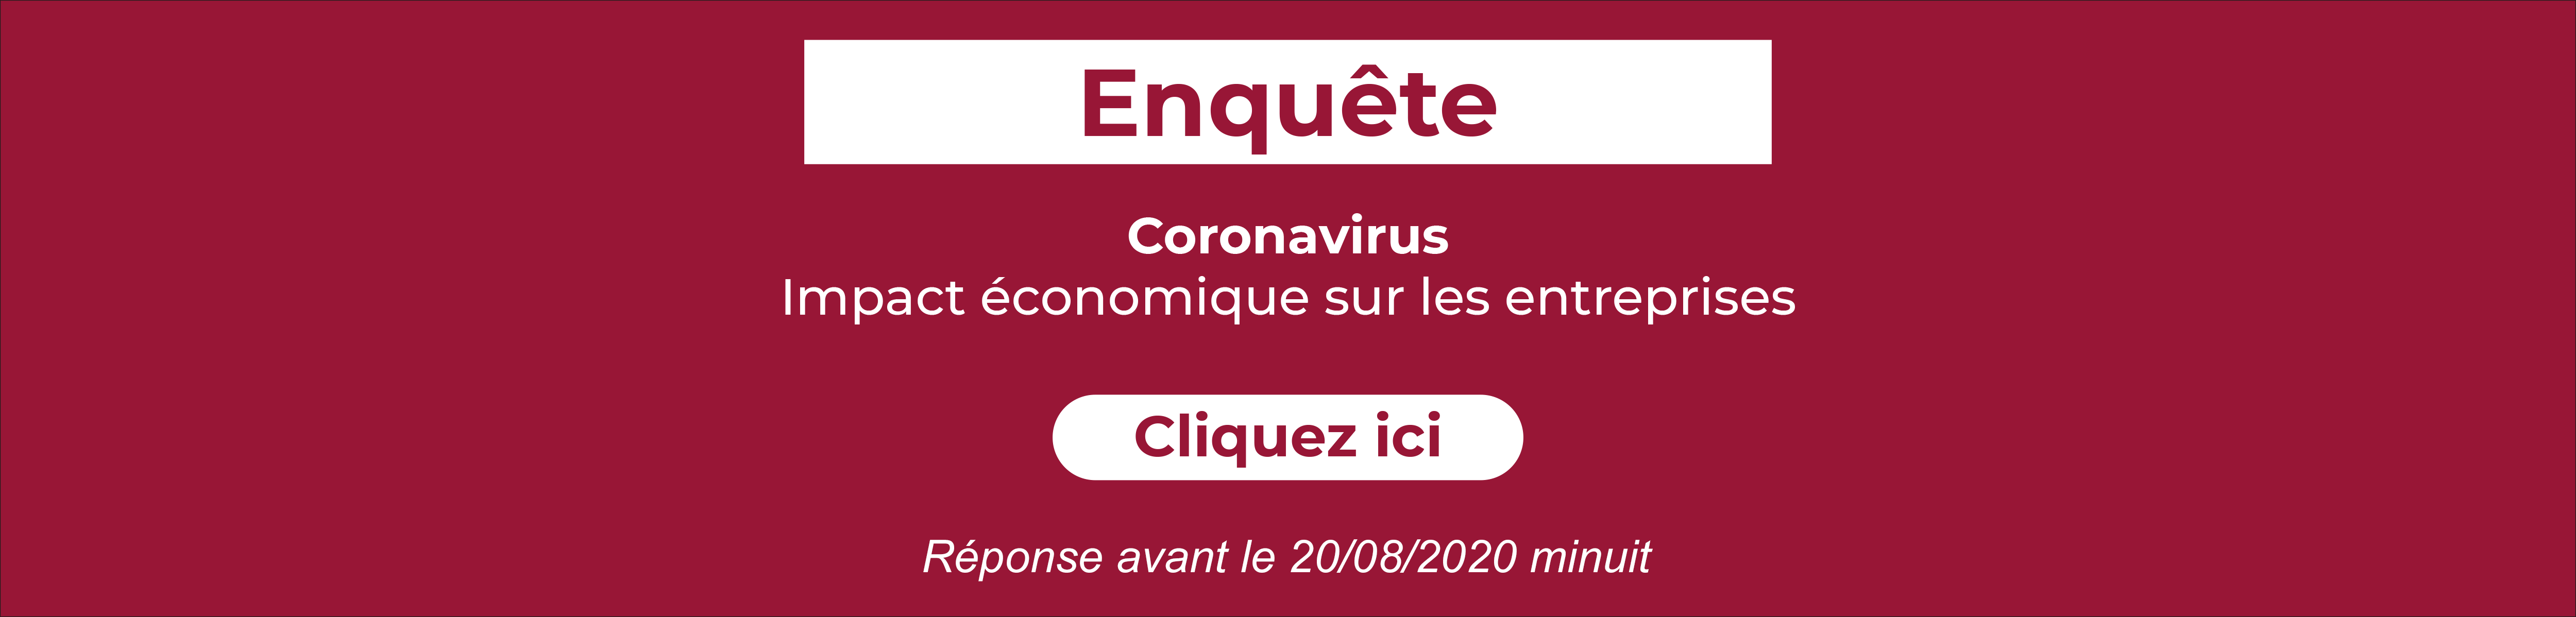 coronavirus enquete cma 2 1